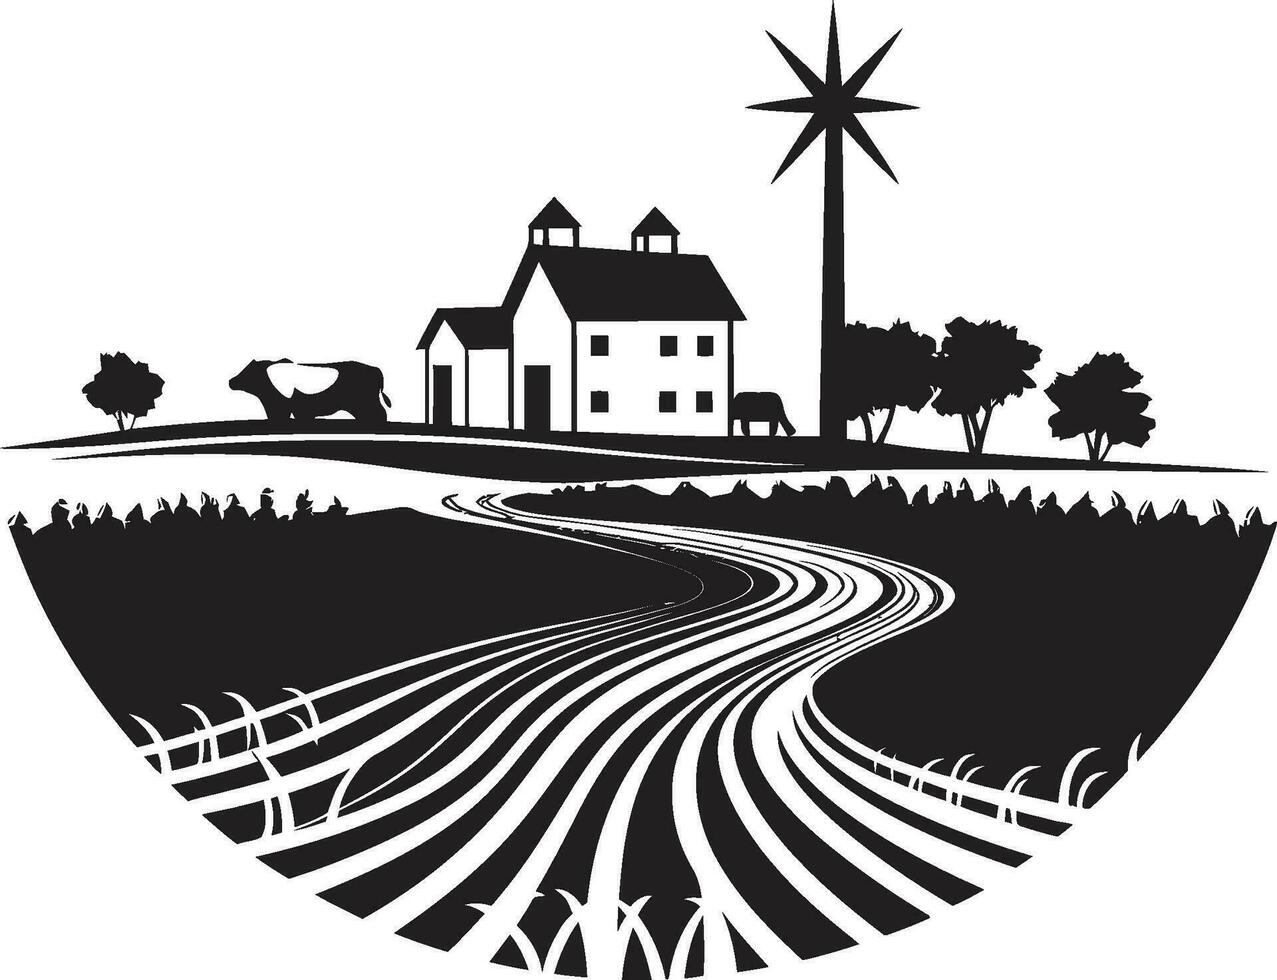 lantlig oas jordbruks logotyp design bondgård väsen svart vektor emblem